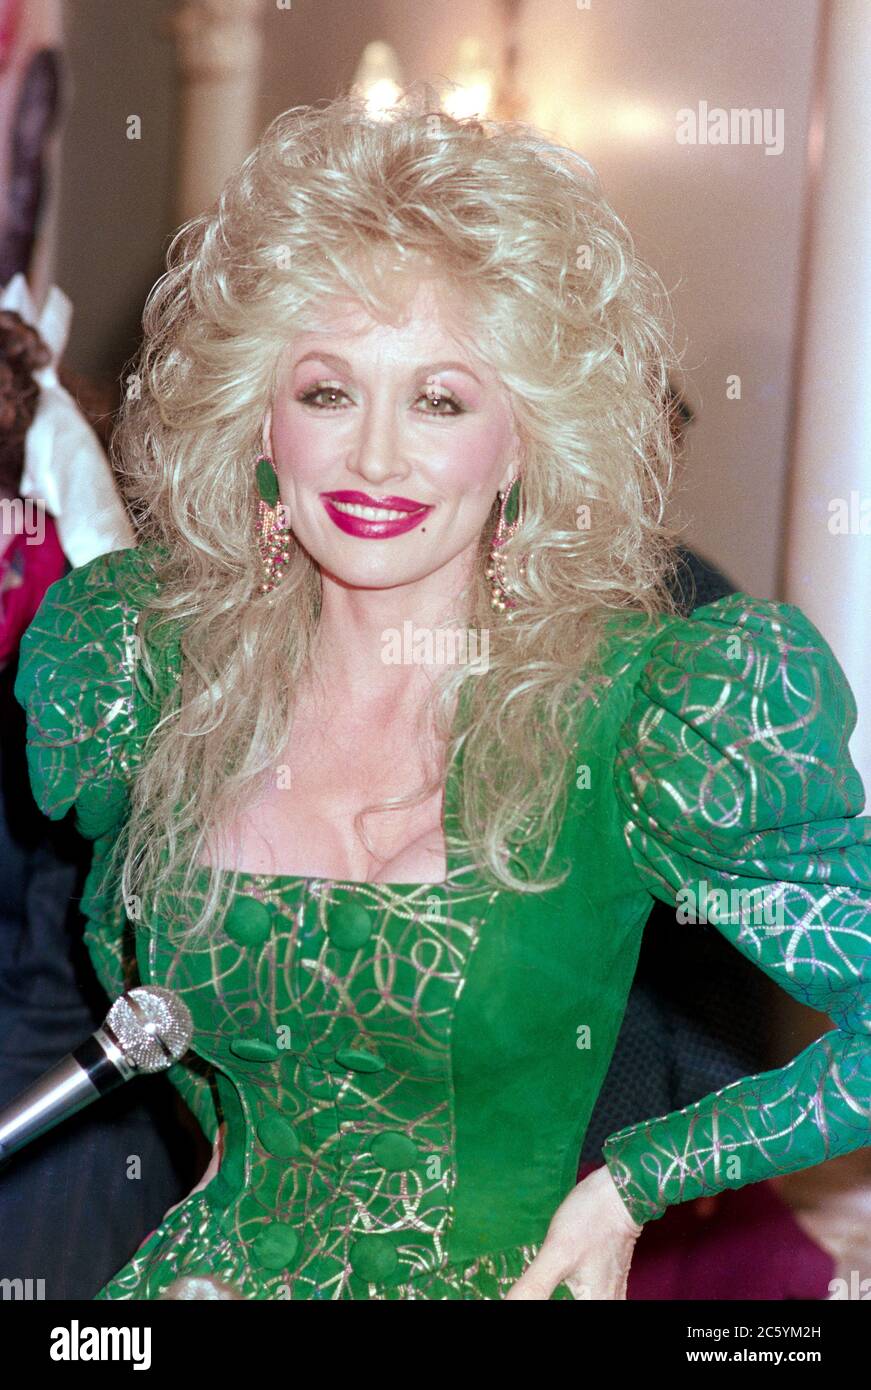 ARCHIV: LONDON, UK: 29. März 1988: Dolly Parton. Datei Foto © Paul Smith/Featureflash Stockfoto